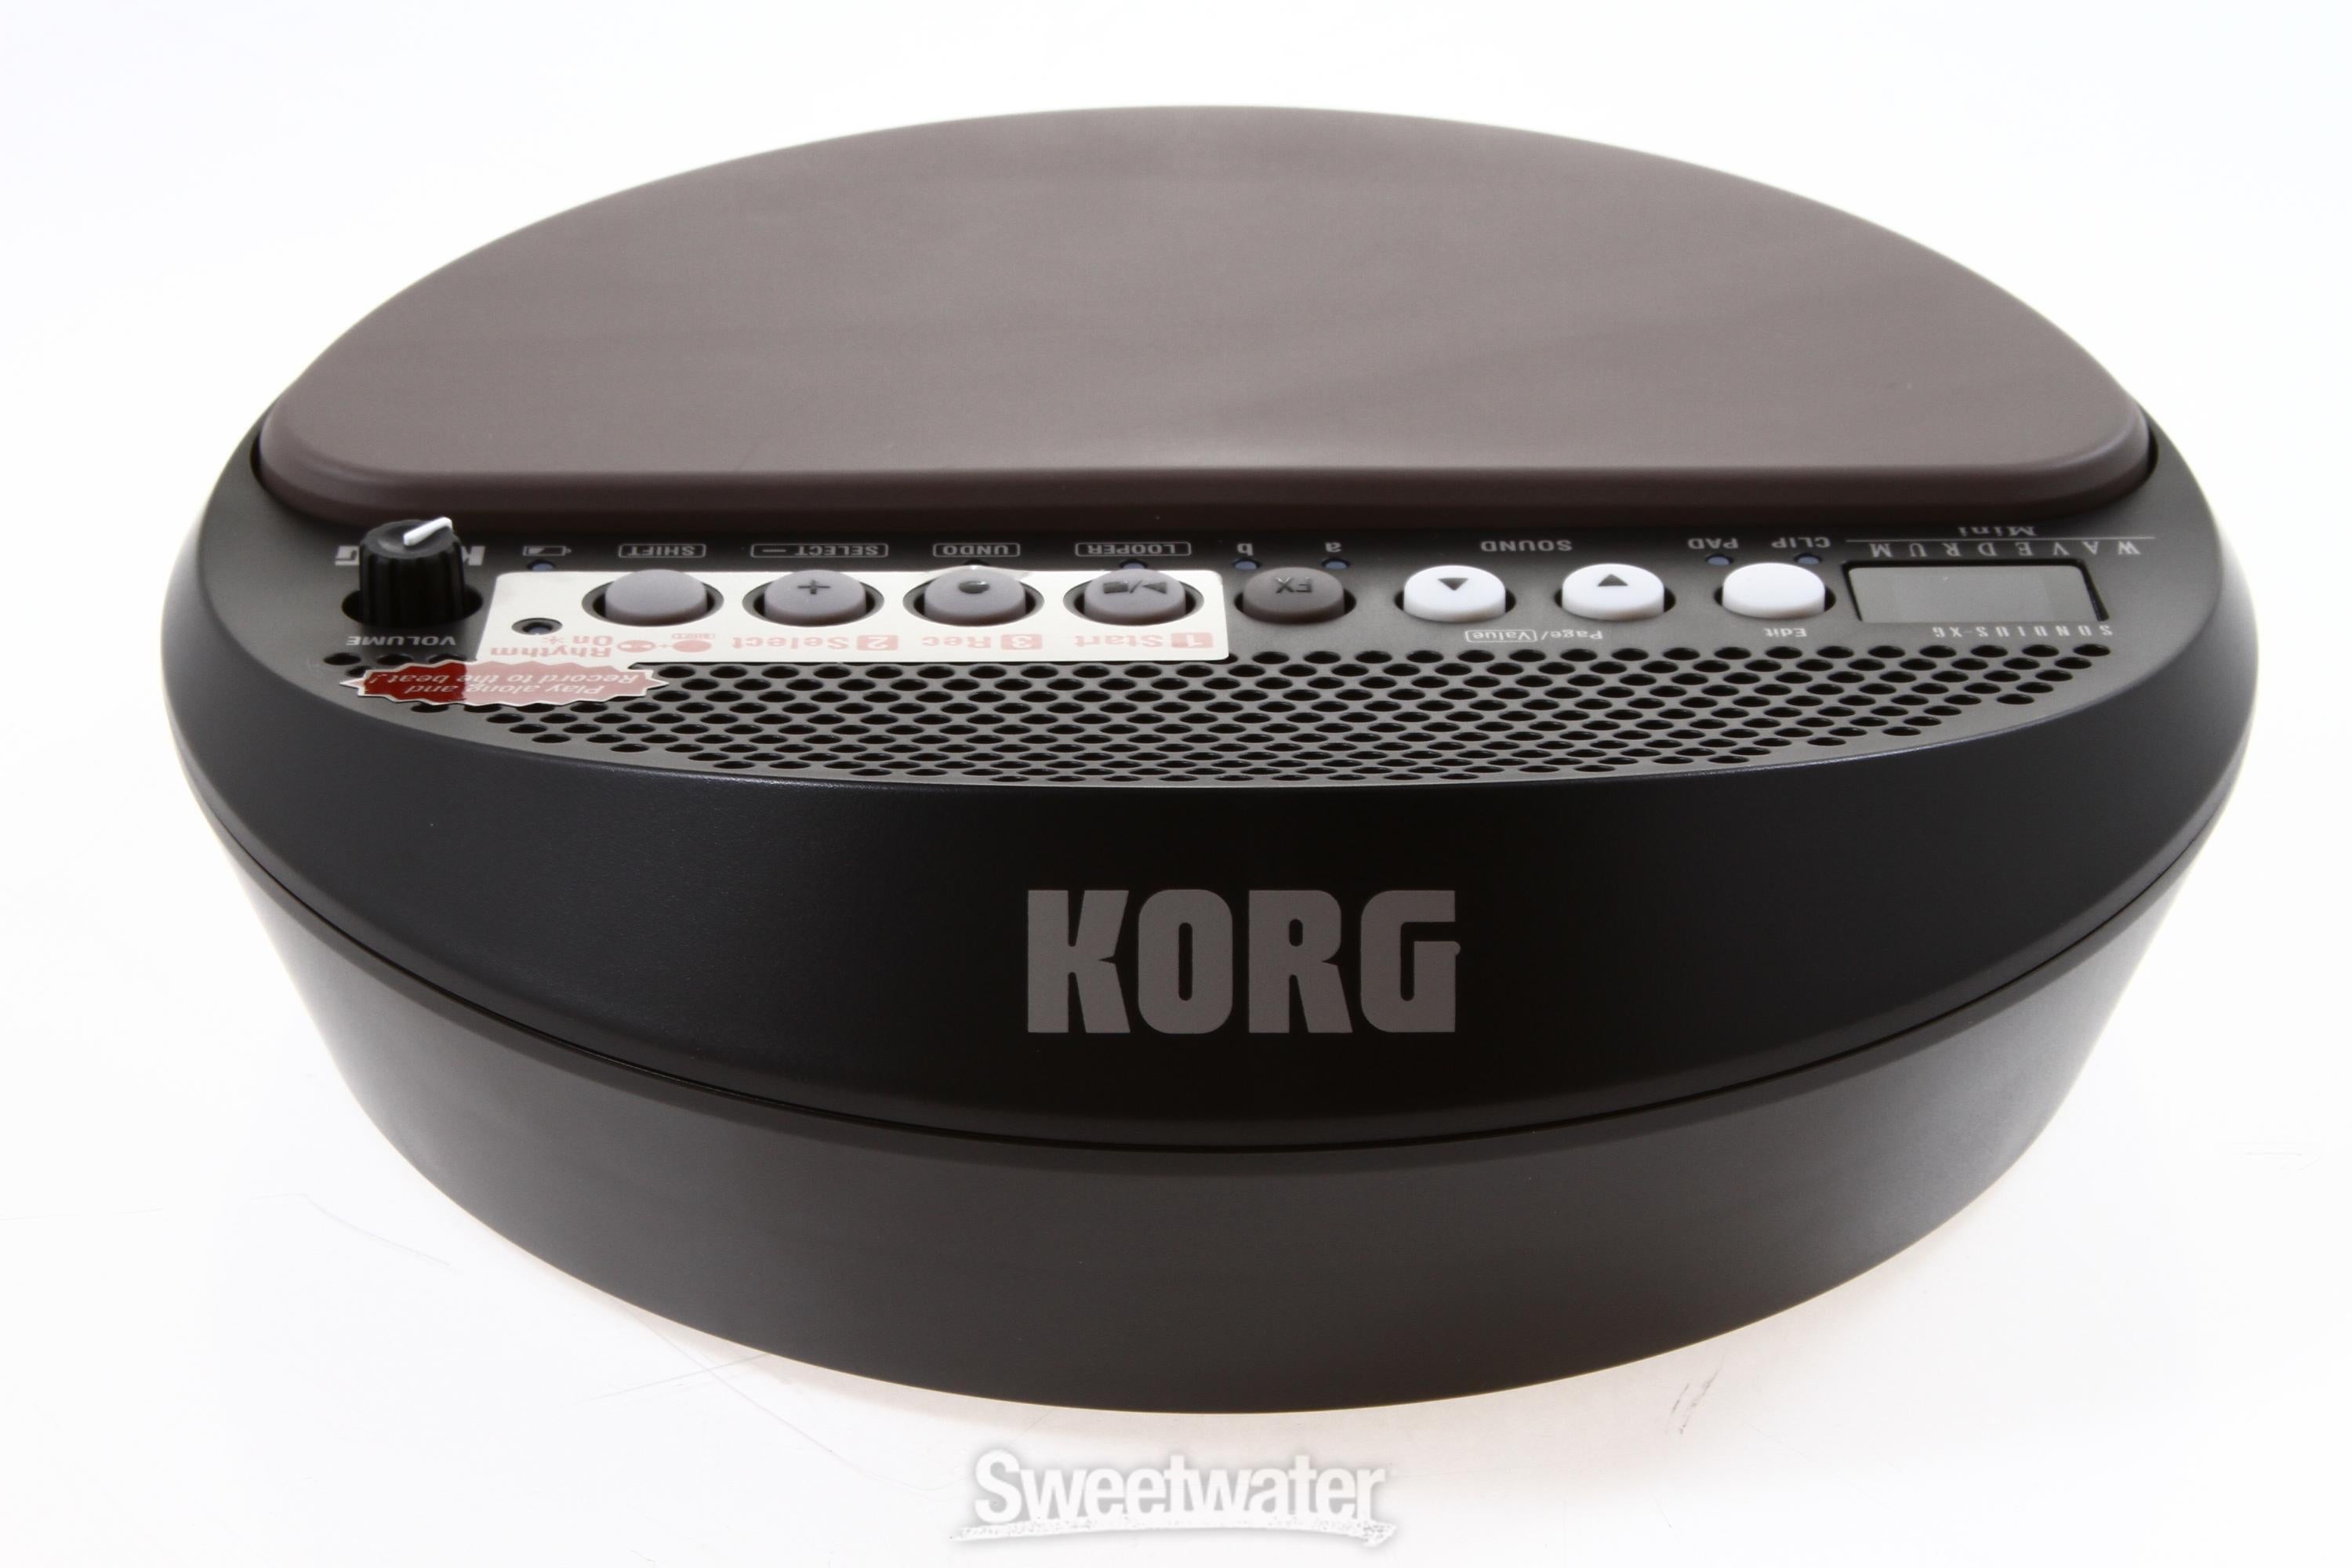 KORG WD-MINI 電子ドラム コルグ パーカッション シンセサイザー-